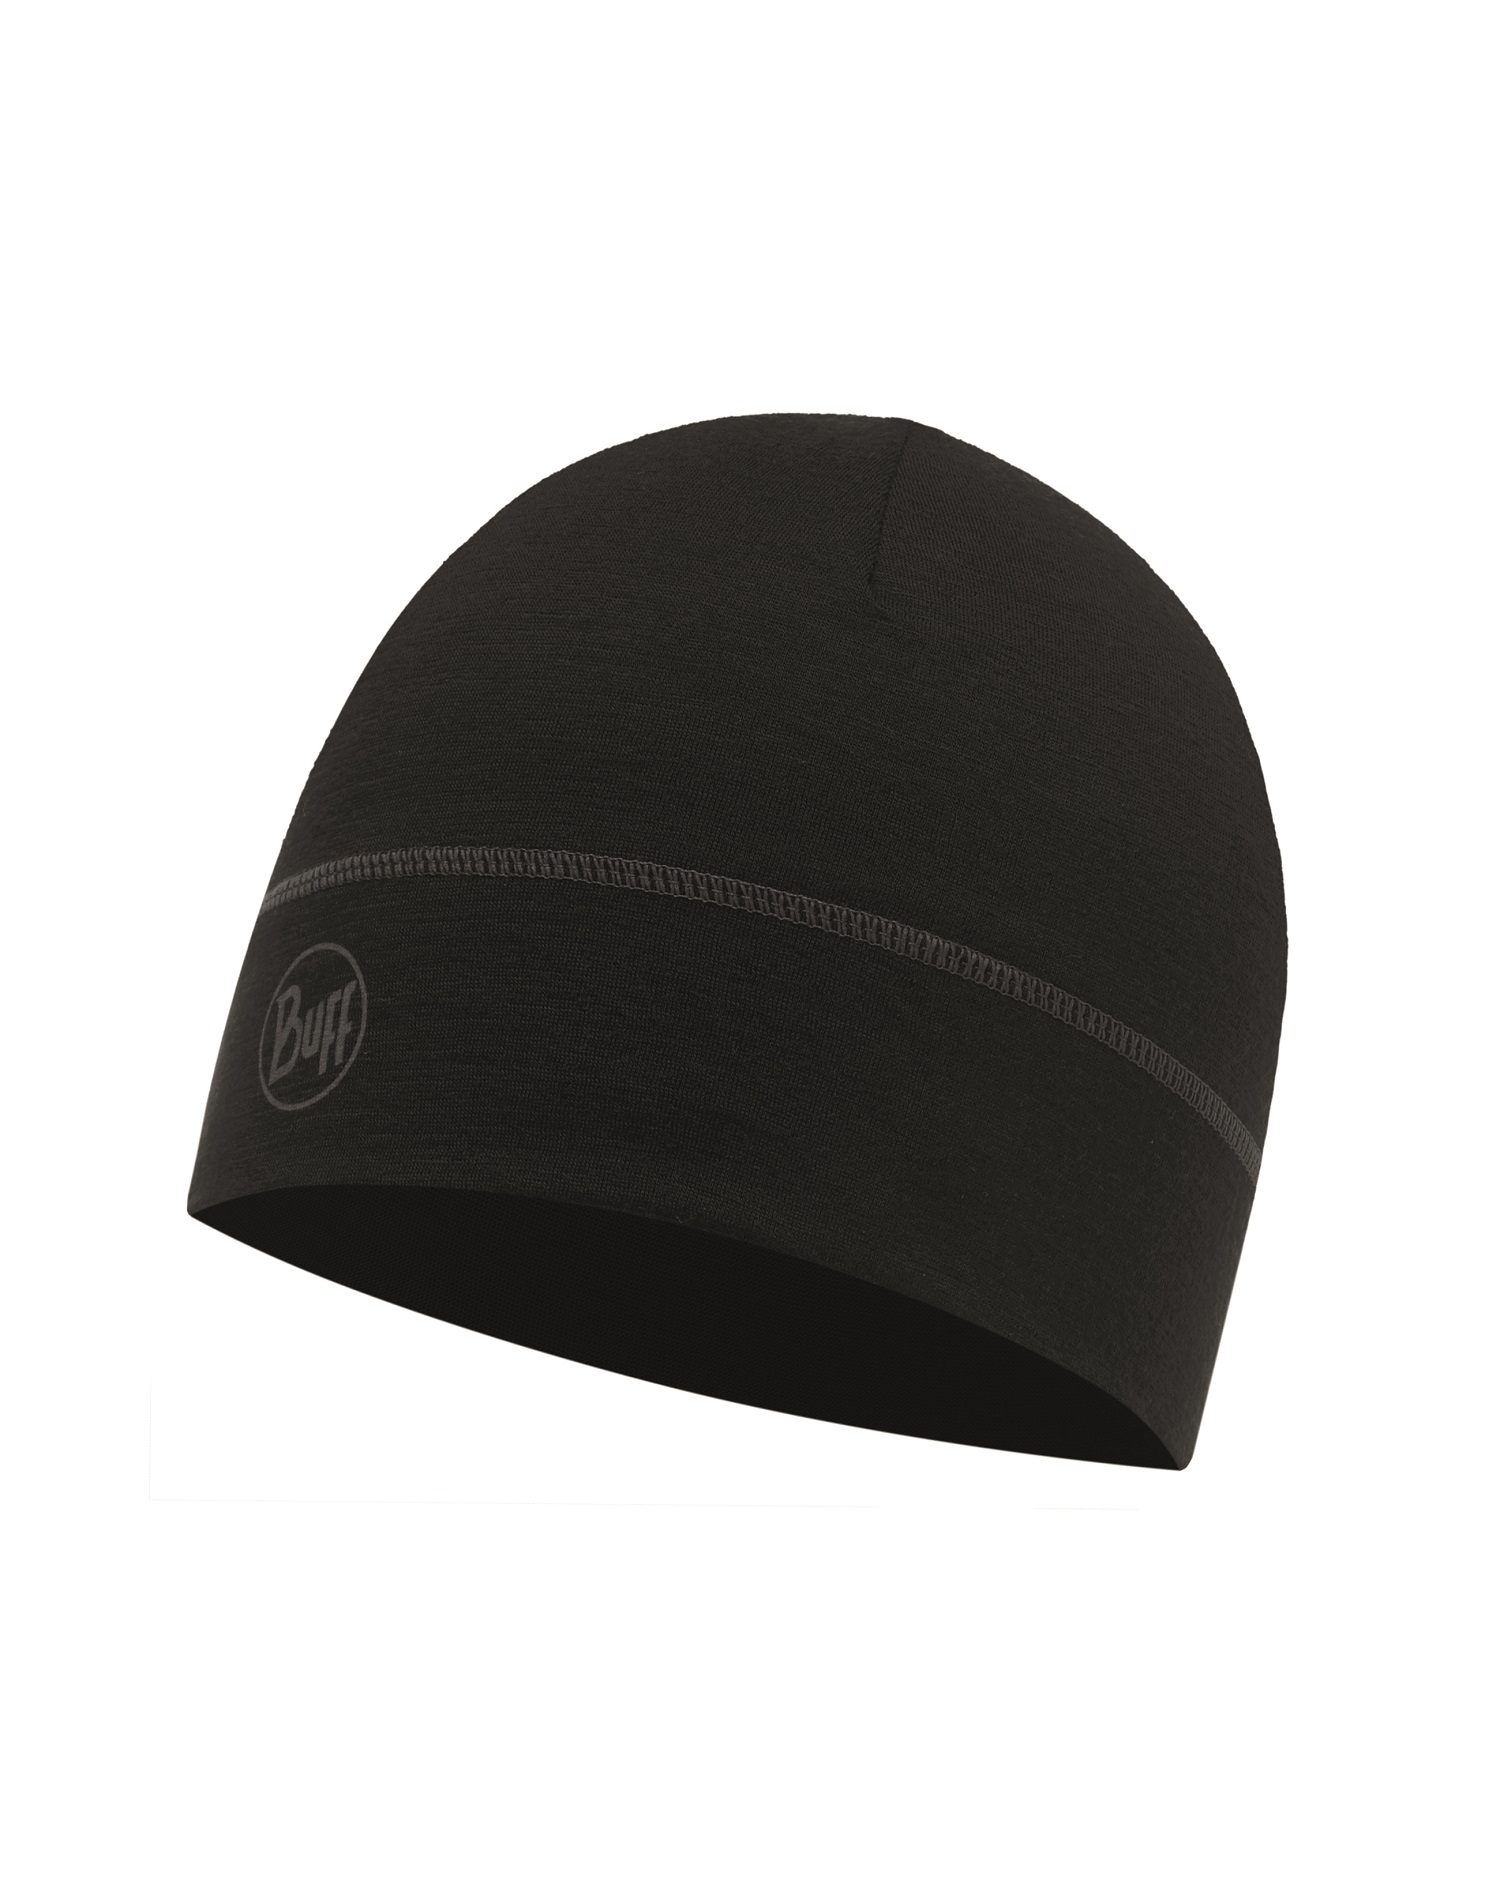 Шапка Buff Lightweight Merino Wool 1 Layer Hat Solid Black